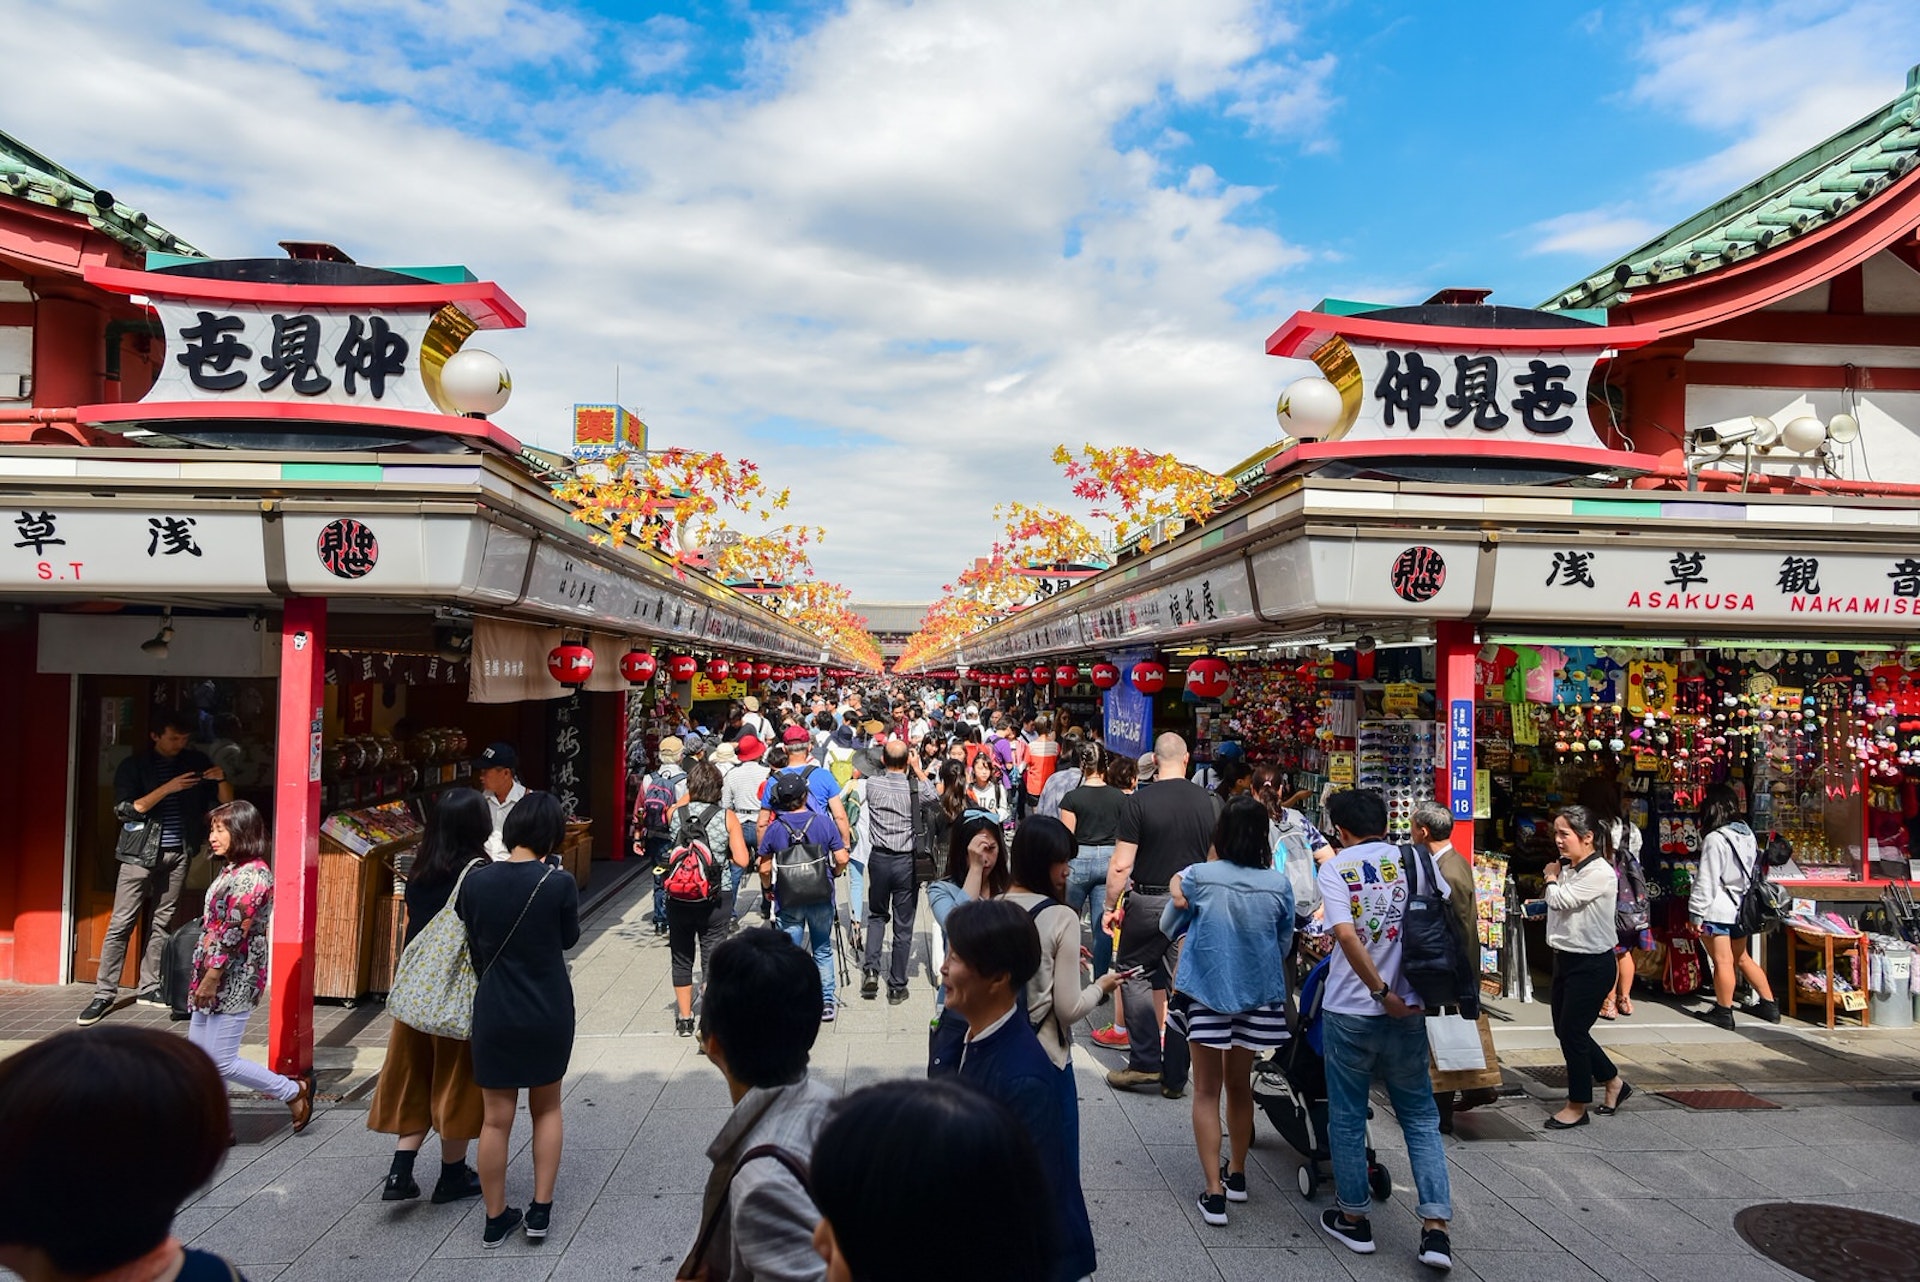  Els 10 millors barris per comprar a Tòquio